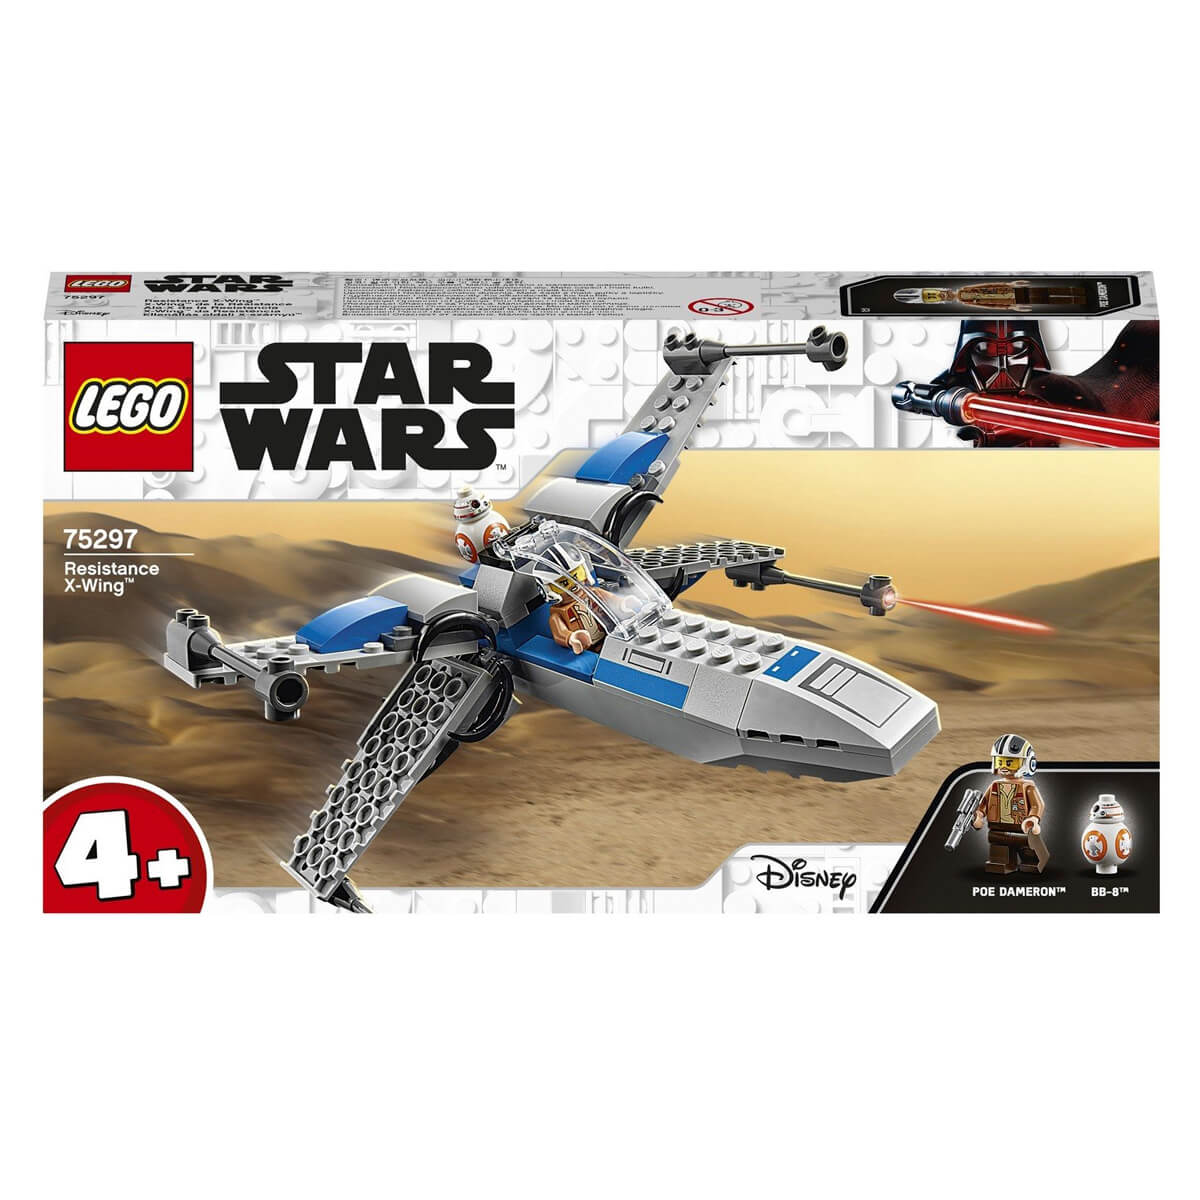 Конструктор LEGO Star Wars 75297 Истребитель сопротивления типа X конструктор lego star wars 75297 истребитель сопротивления типа x 60 дет